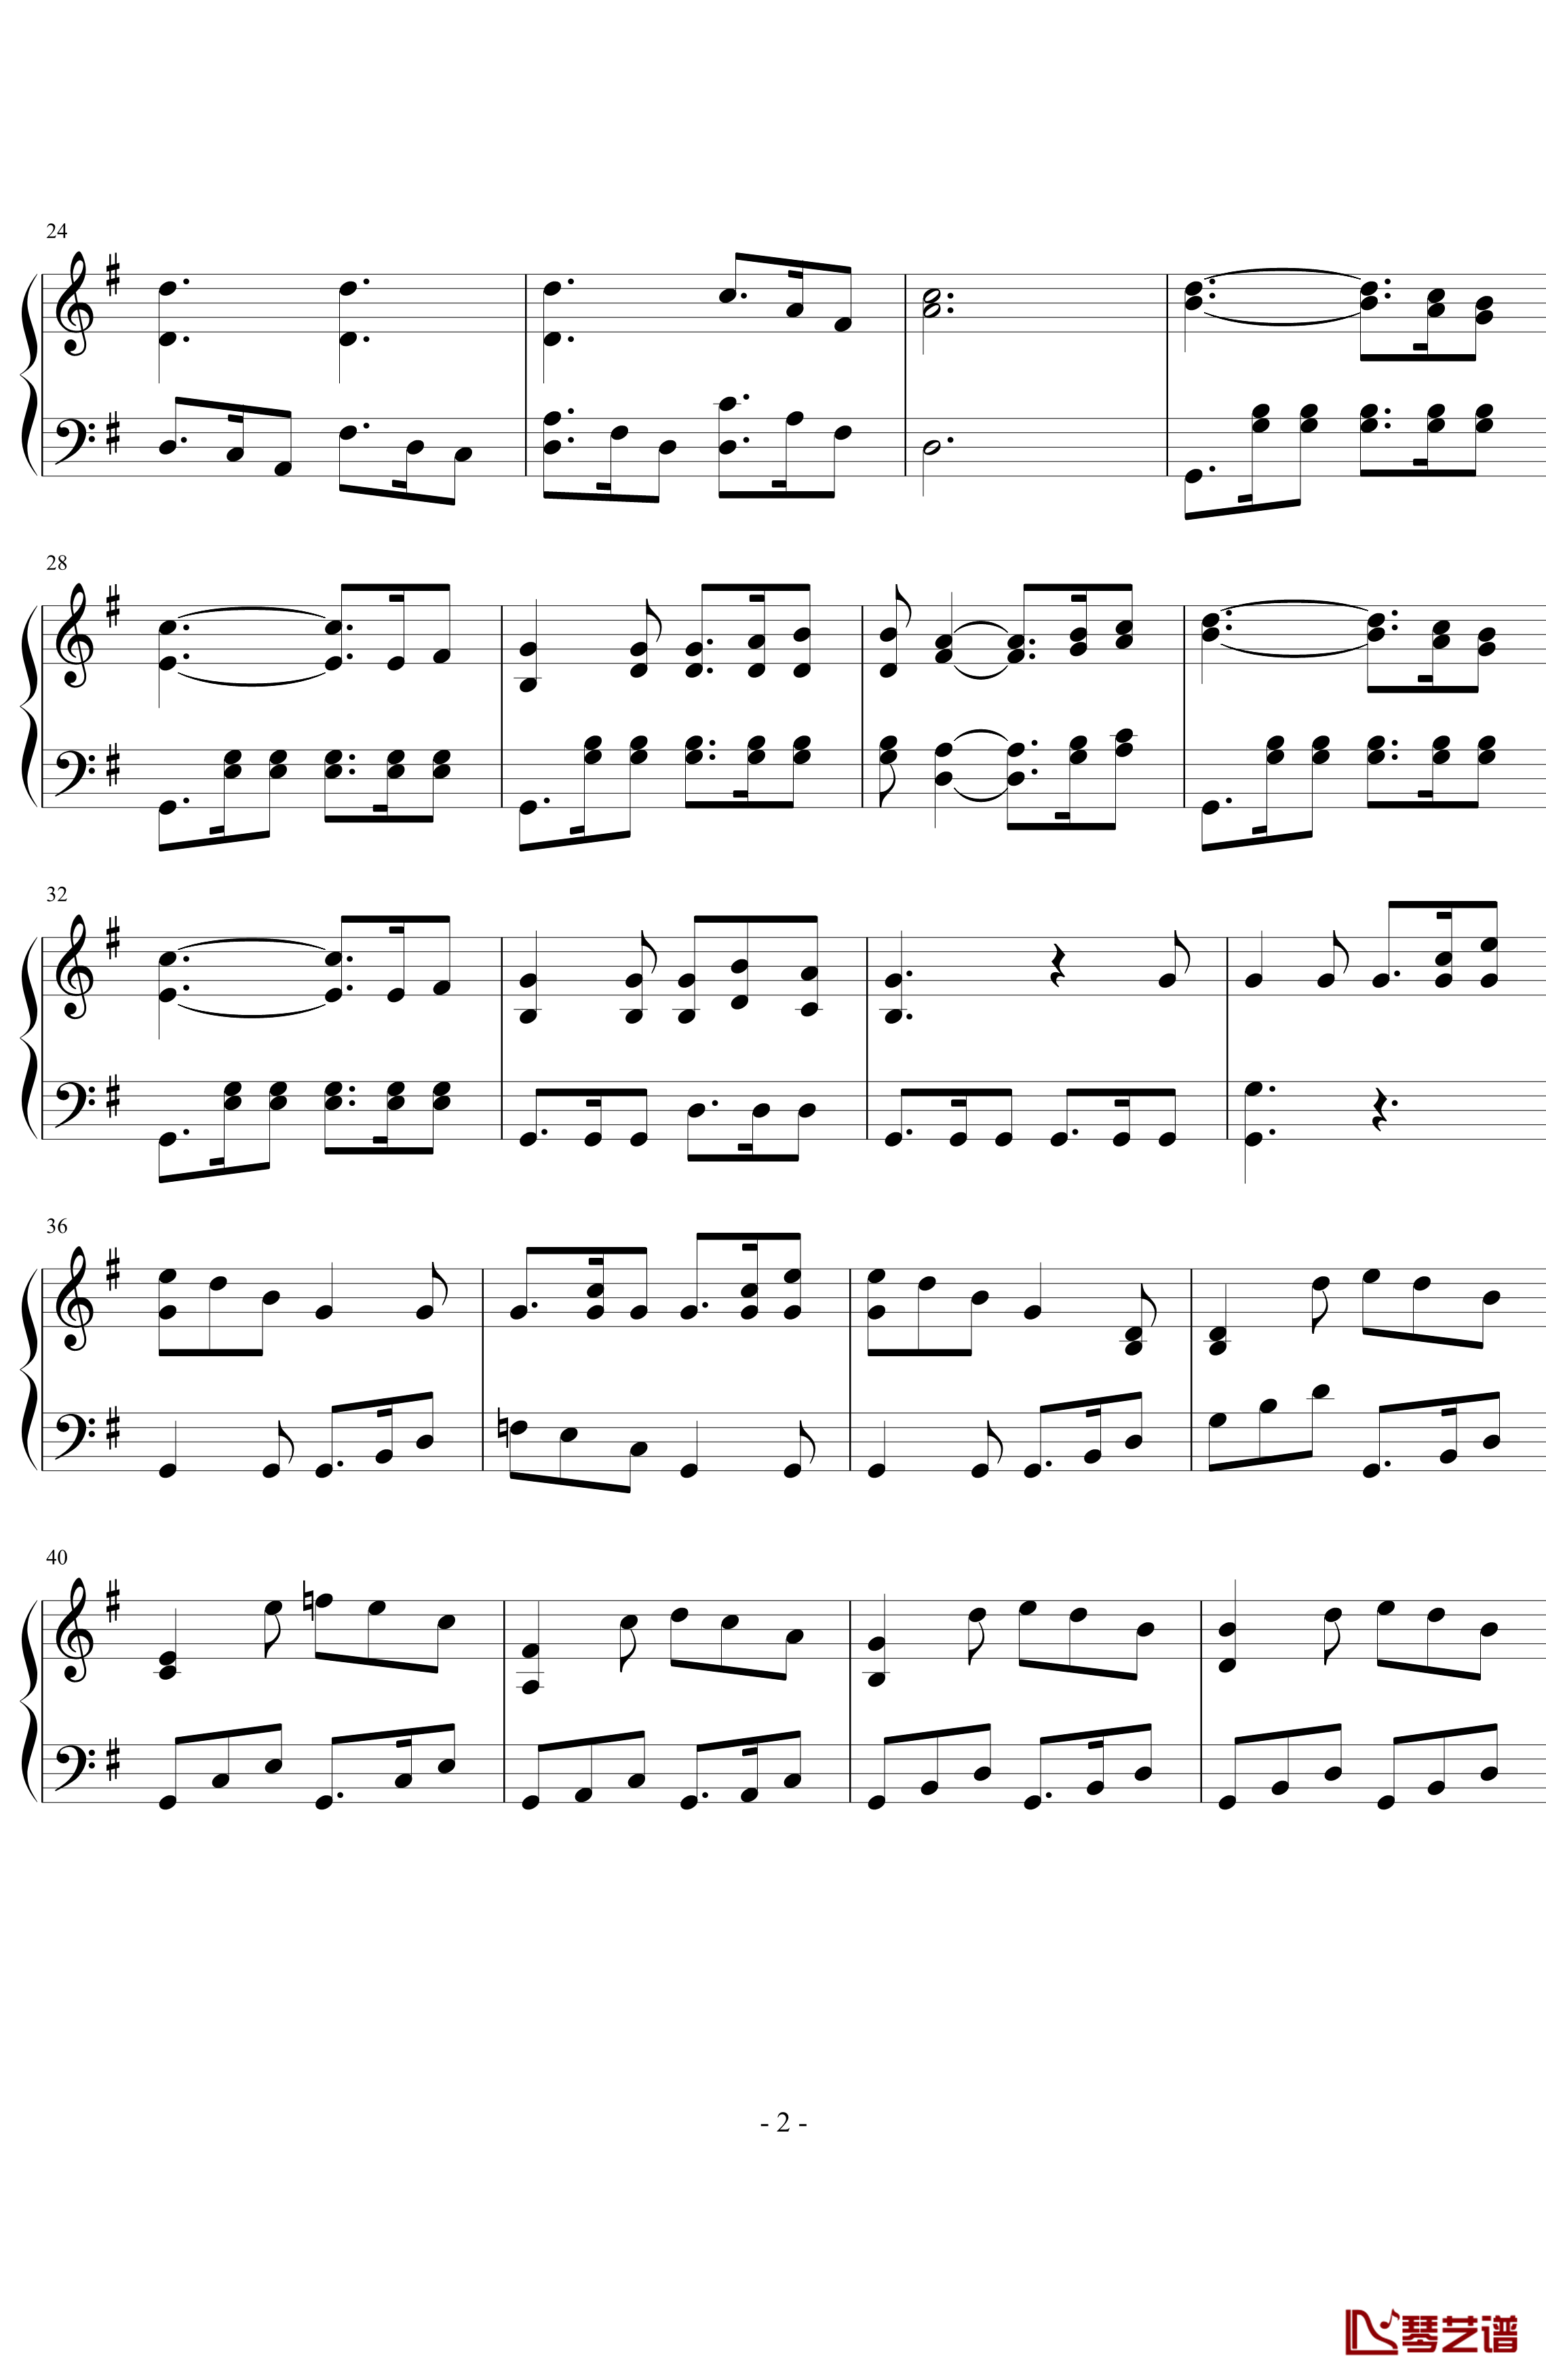 第七号交响曲第一乐章钢琴谱-贝多芬-beethoven2